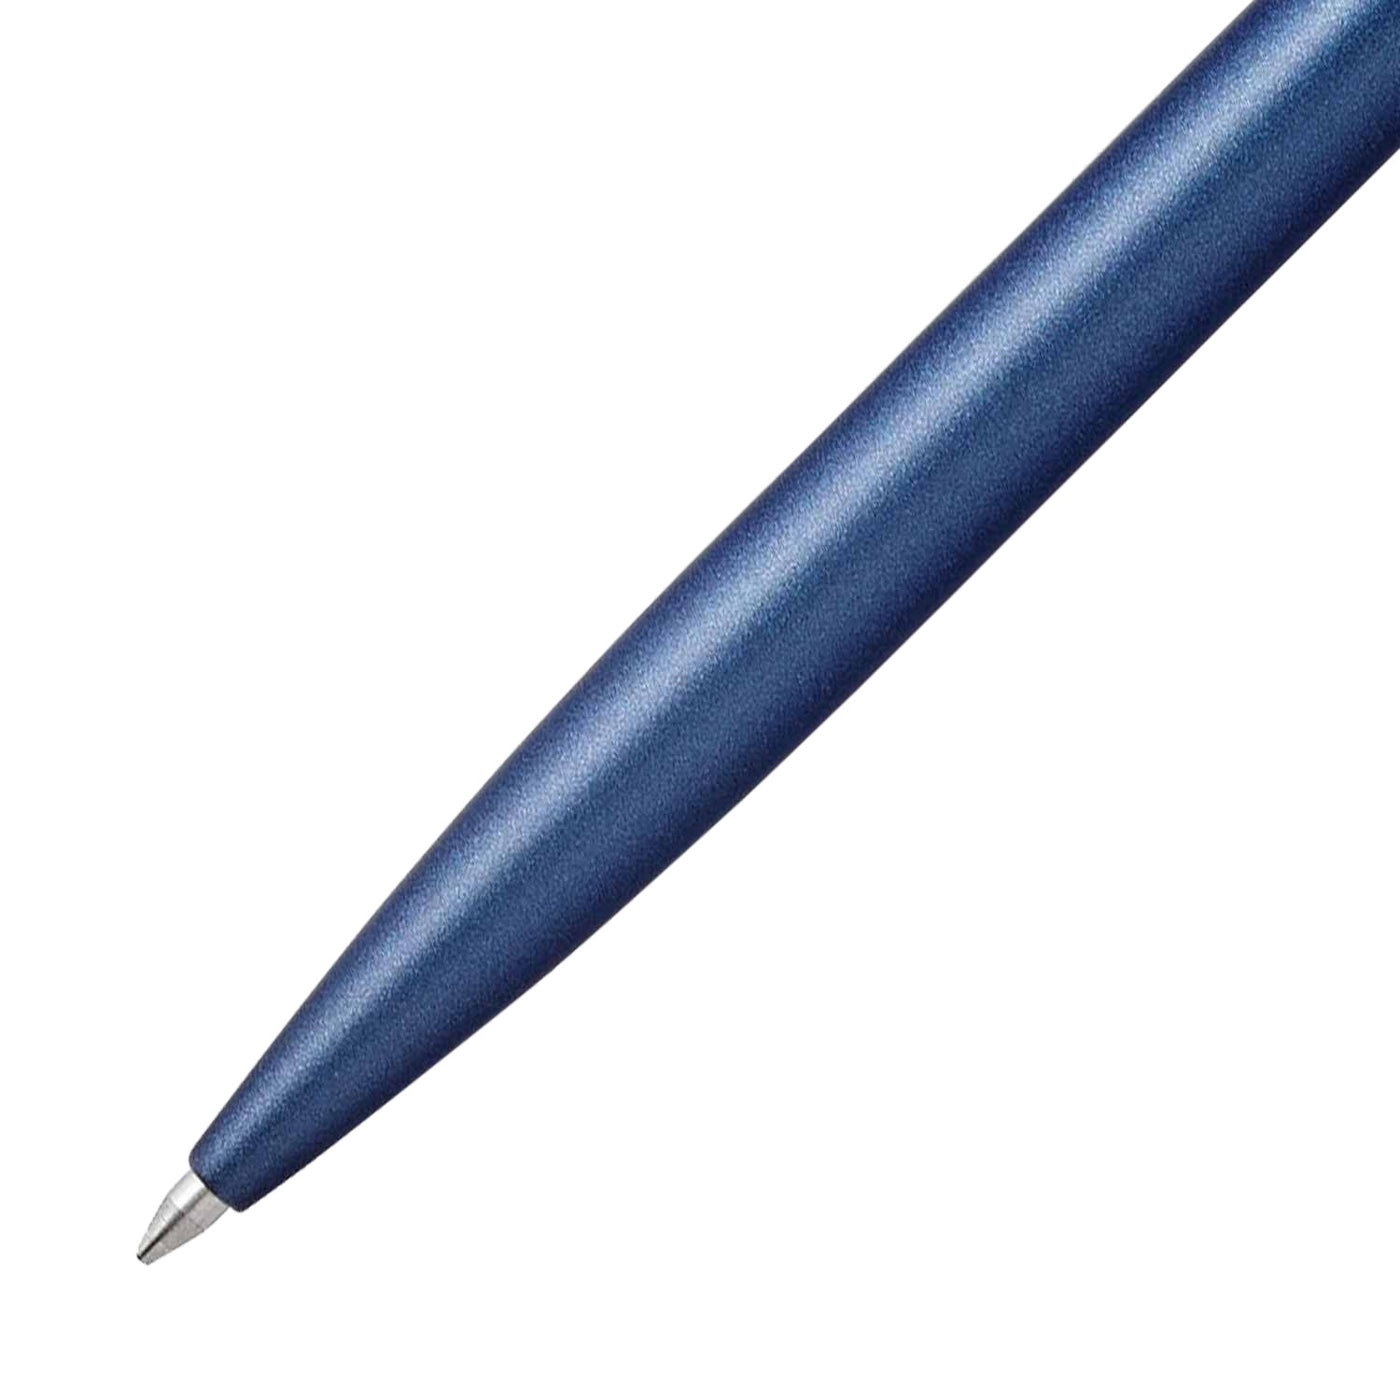 Sheaffer Reminder Ball Pen - Matte Blue PVD 2